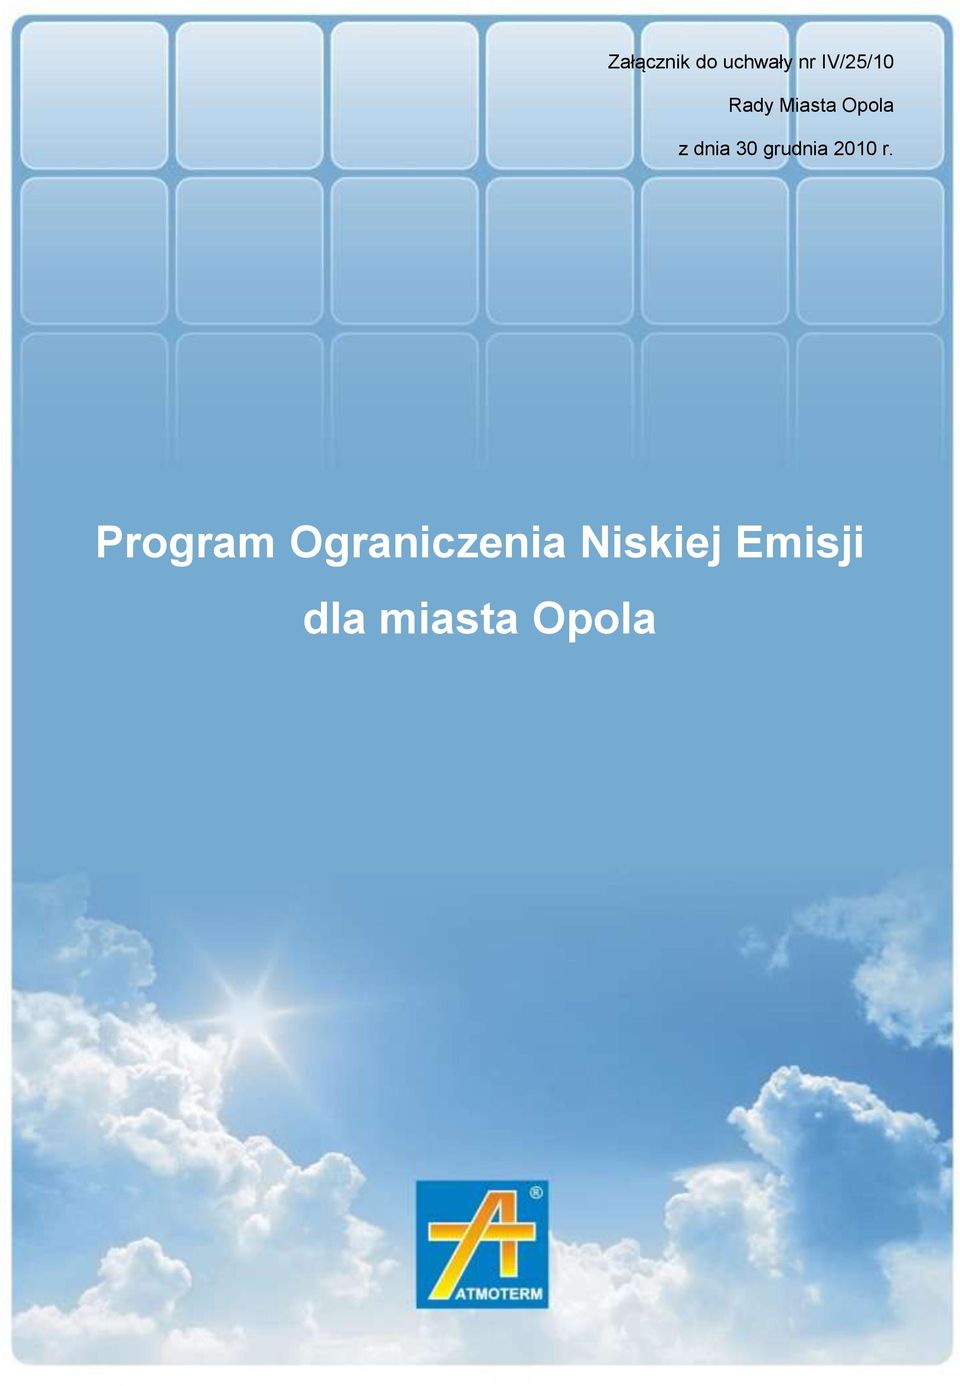 Rady Miasta Opola z dnia 30 grudnia 2010 r.